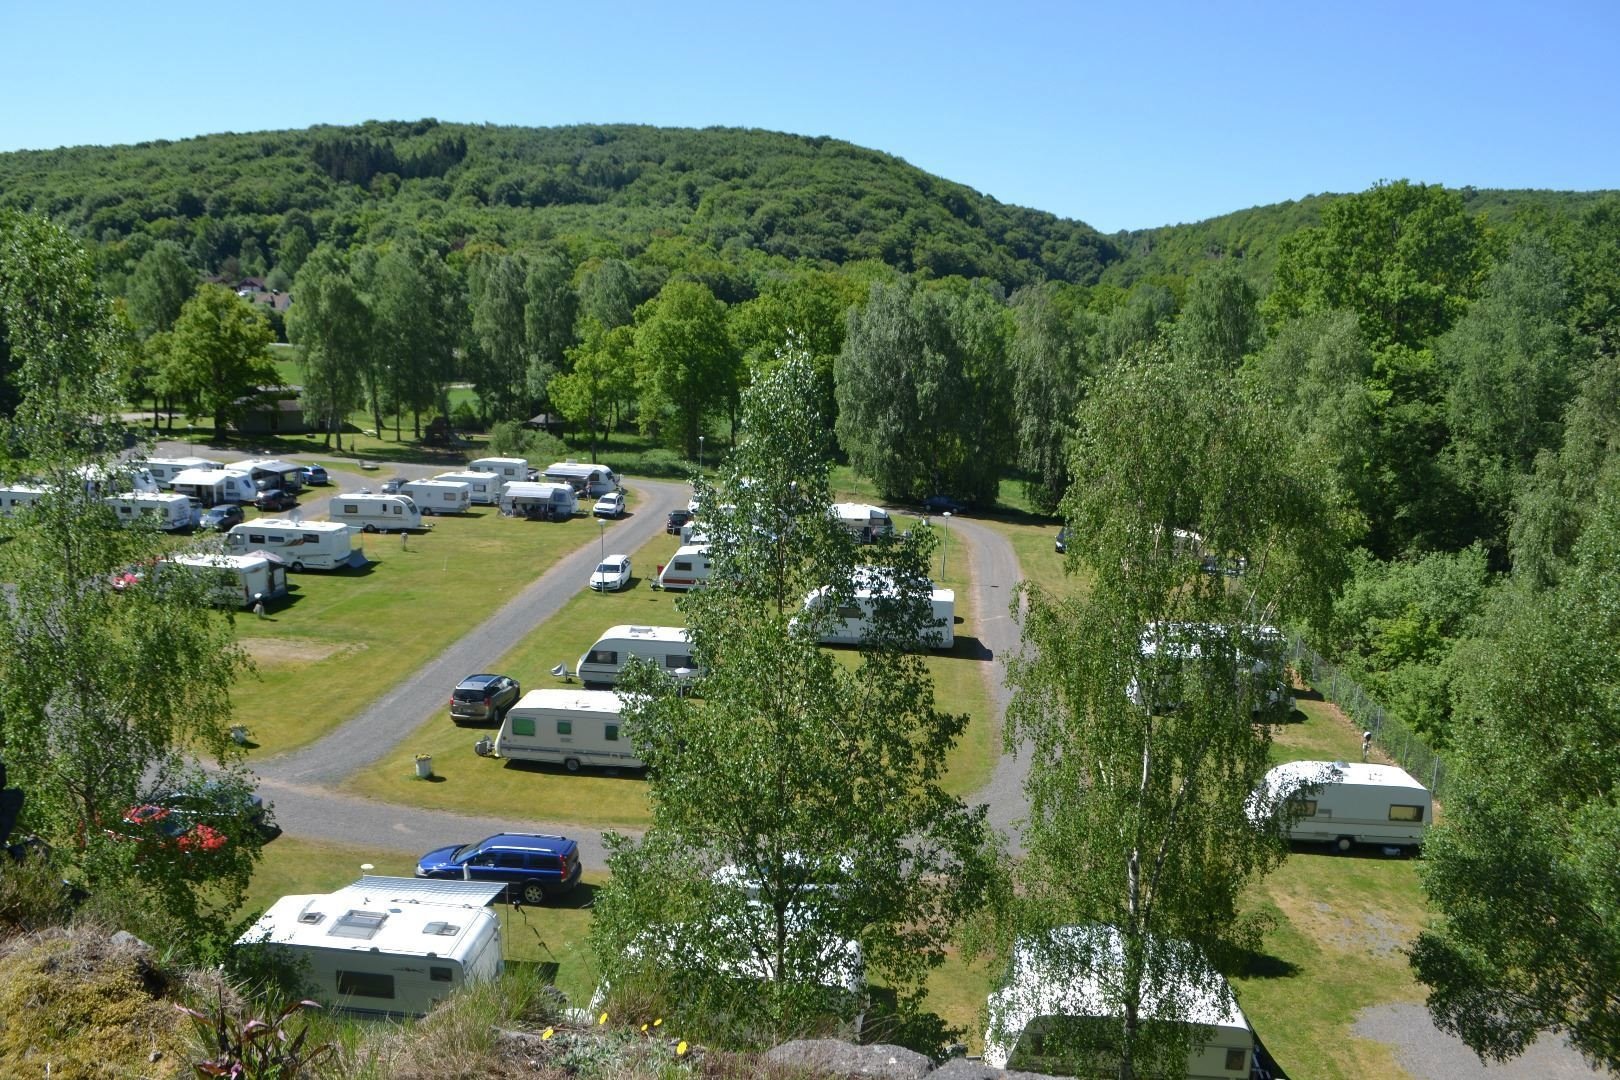 Emplacement de camping caravane/camping-car/tente (avec électricité)